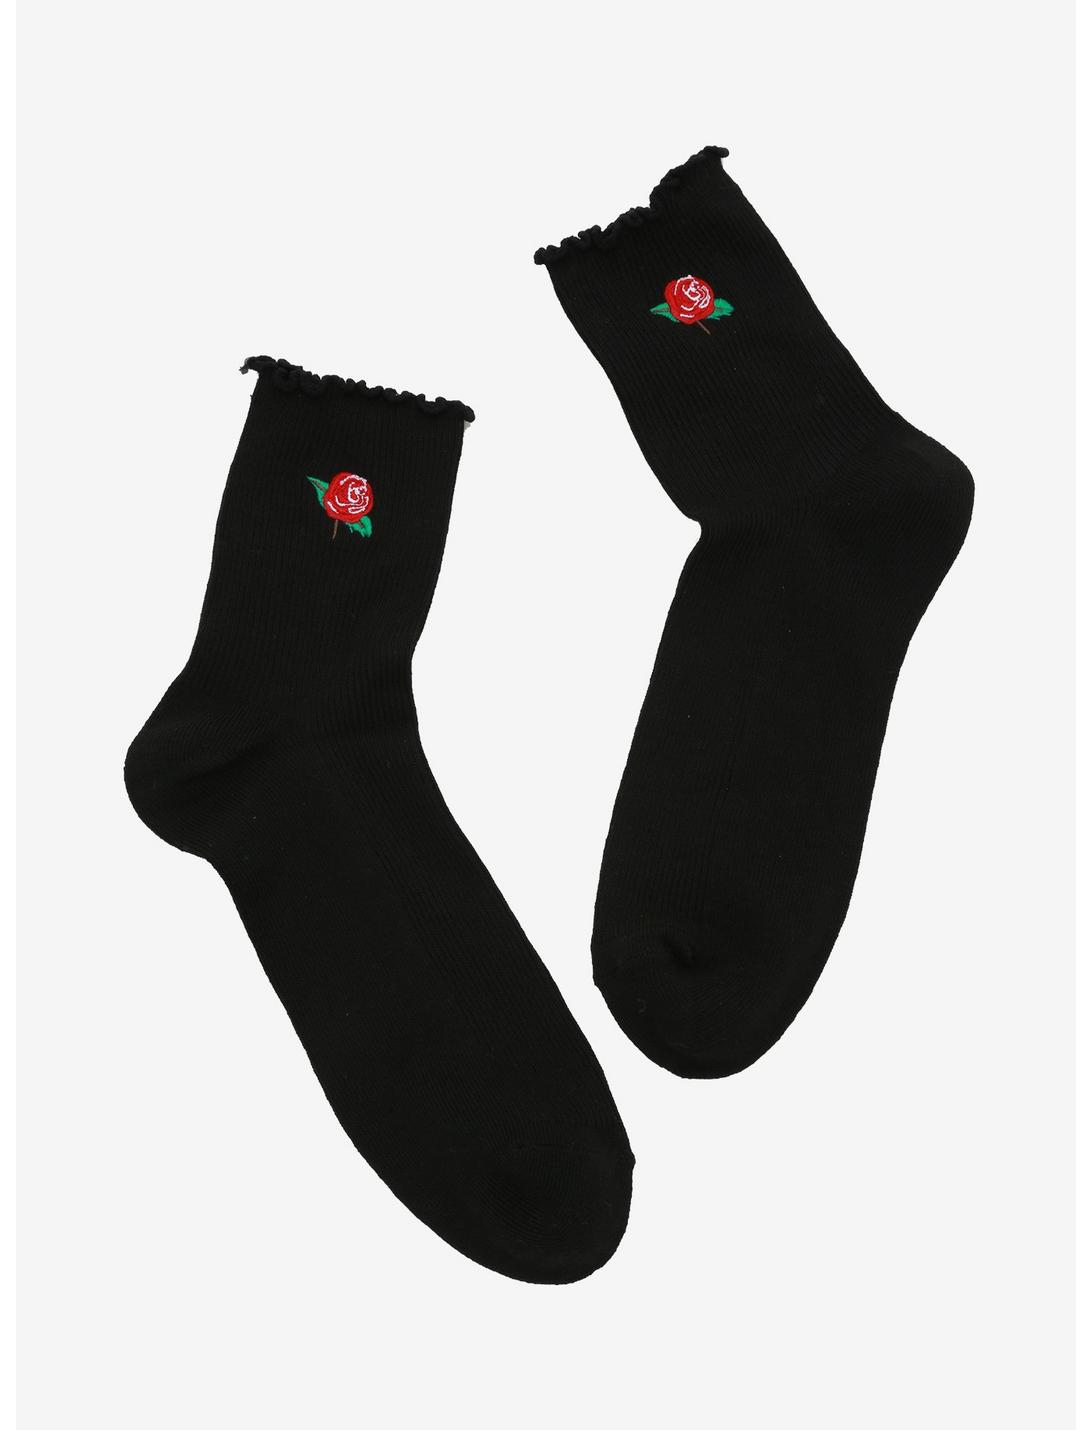 Rose Black Ankle Socks | Hot Topic